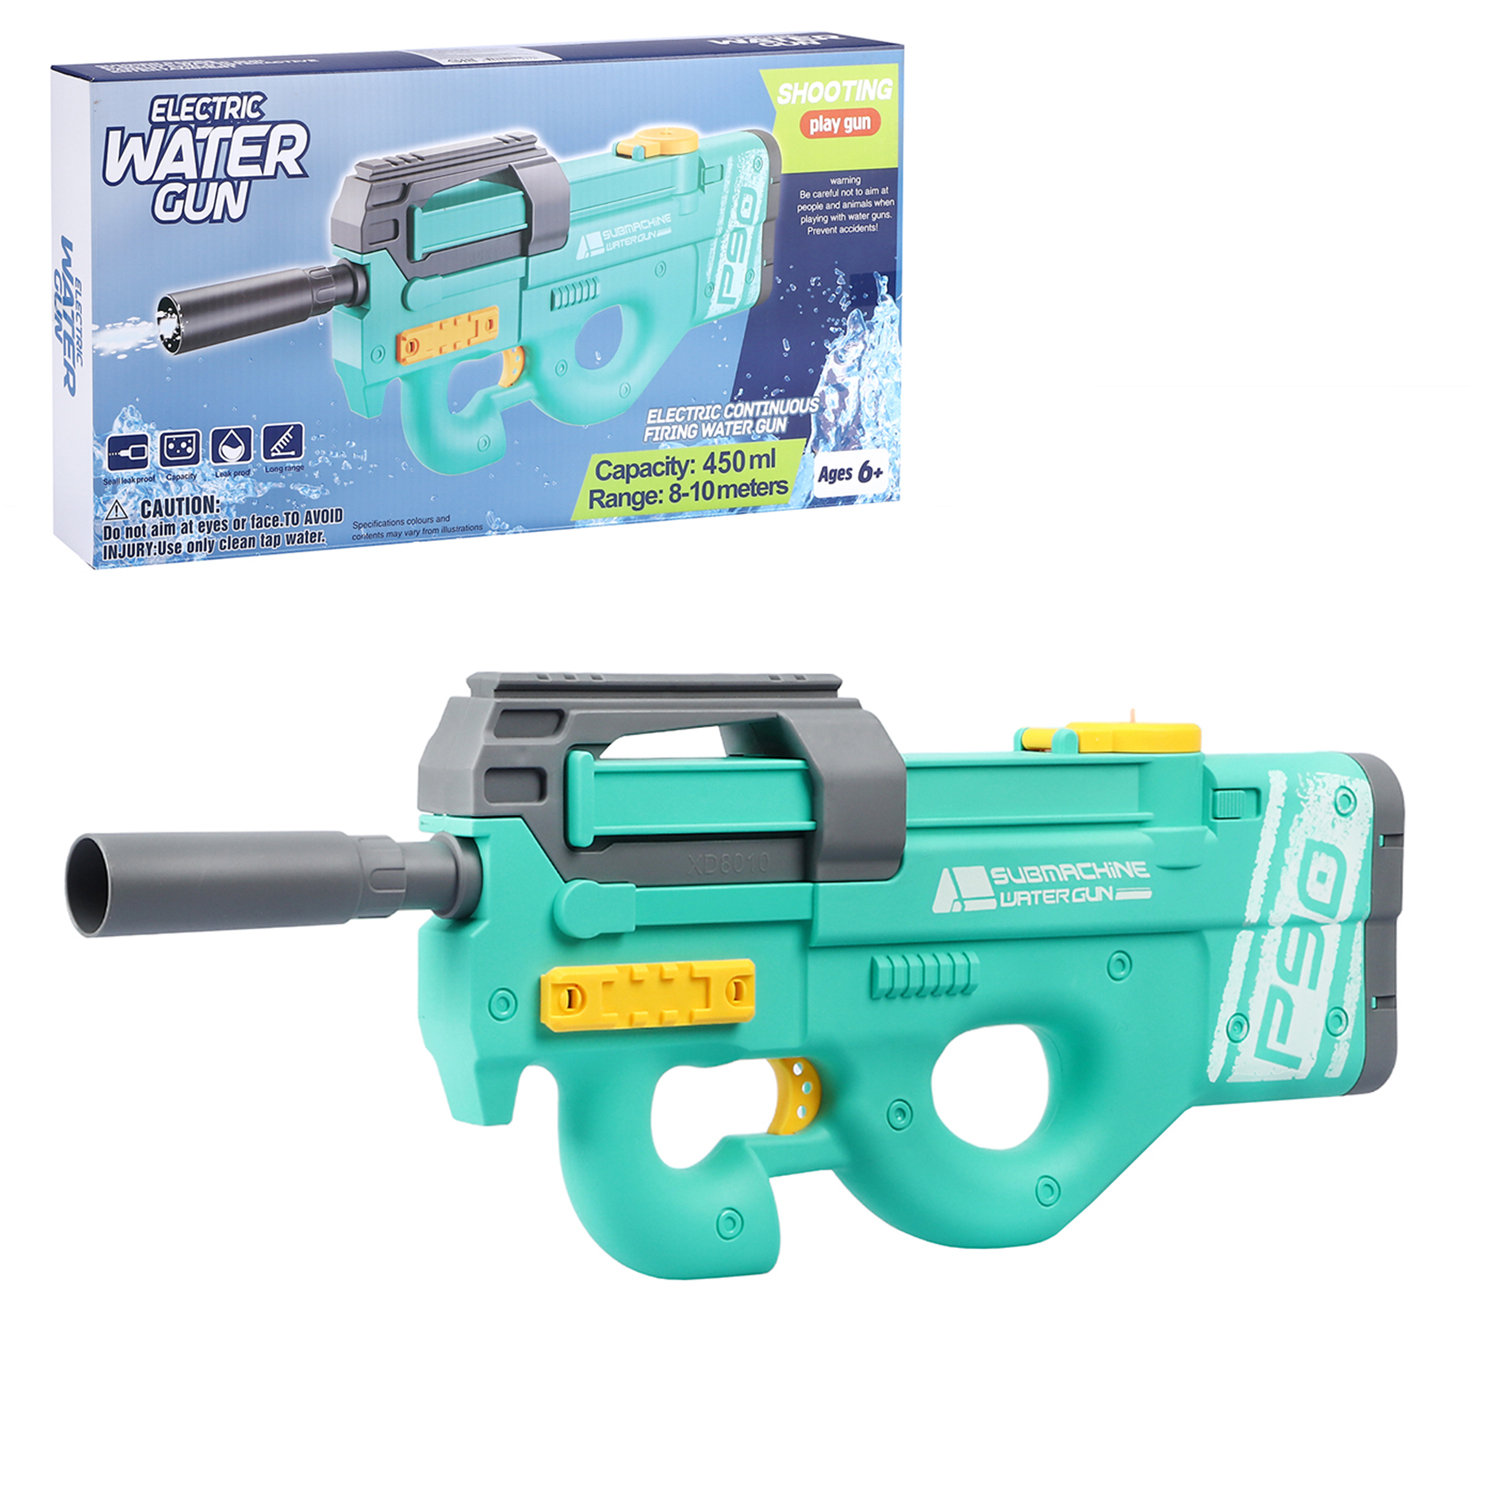 Водный пистолет игрушечный, электропистолет, на аккумуляторе, бирюзовый, JB0211237 водяное оружие на аккумуляторе пистолет игрушечный с функцией спрея водный бой jb0211495